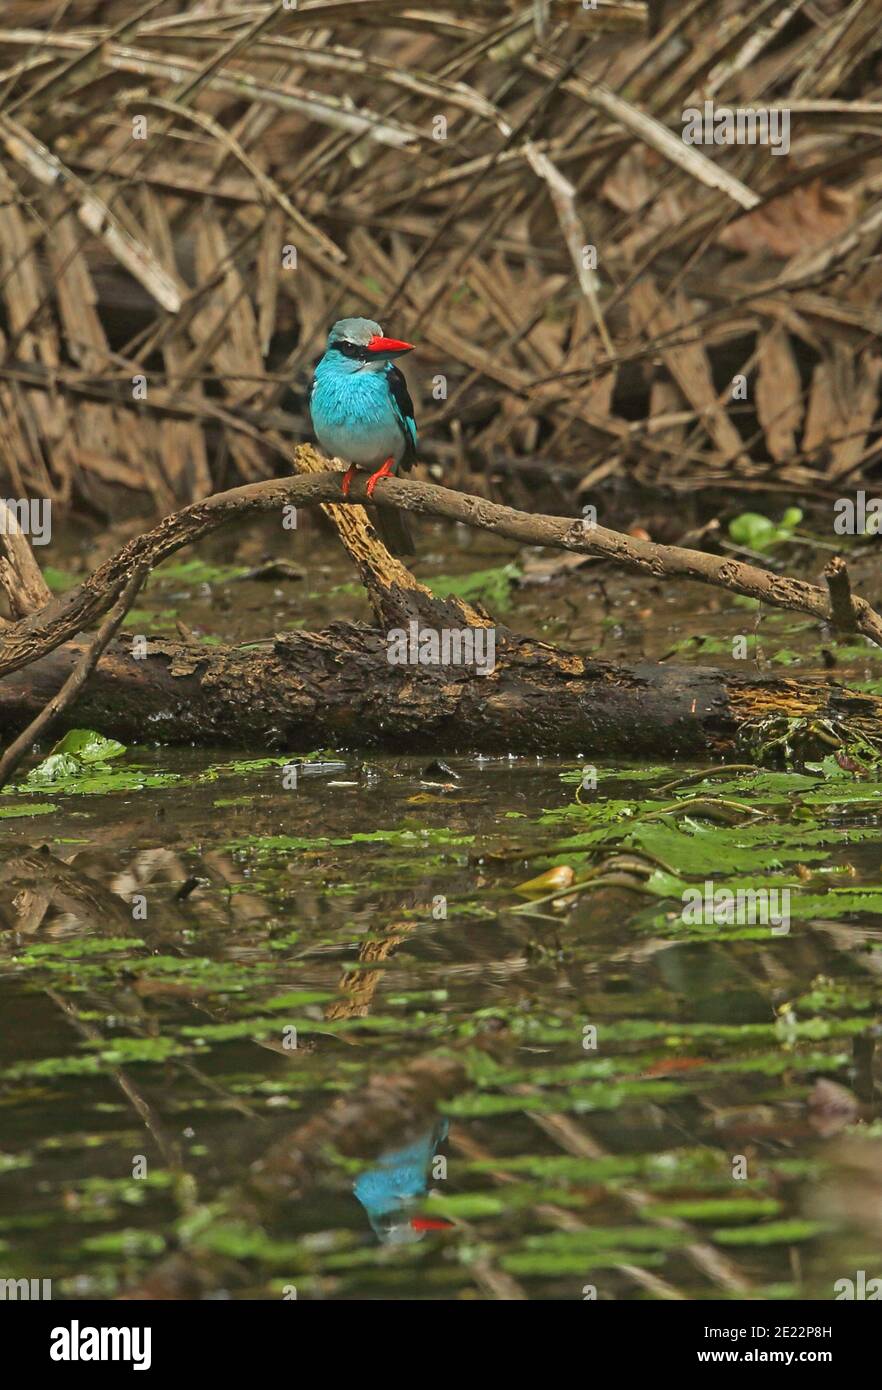 Kingfisher croisé (Halcyon malimbica forbesi) adulte perché sur la branche au-dessus de l'eau avec réflexion Ankasa Reserve, Ghana Fév Banque D'Images